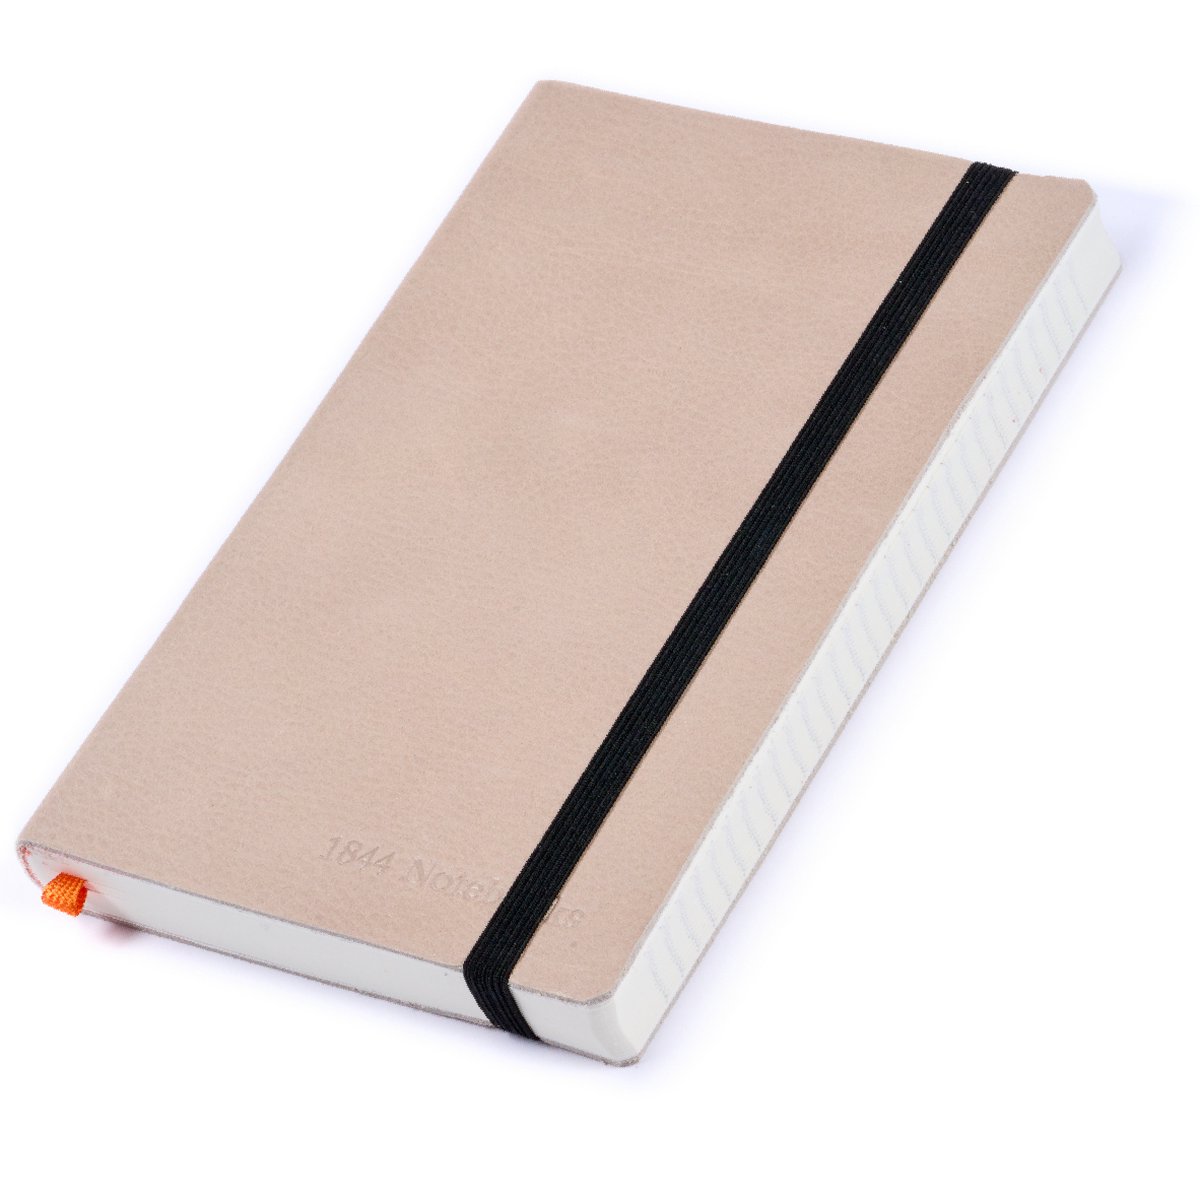 Notitieboek - Notebook A5 - Moederdag cadeau - Cadeau voor man - Notitieboekje - Handgemaakt van leer - Schrijfblok - Notebook - Notitieblok - Light Grey - grijs - 1844 Notebooks